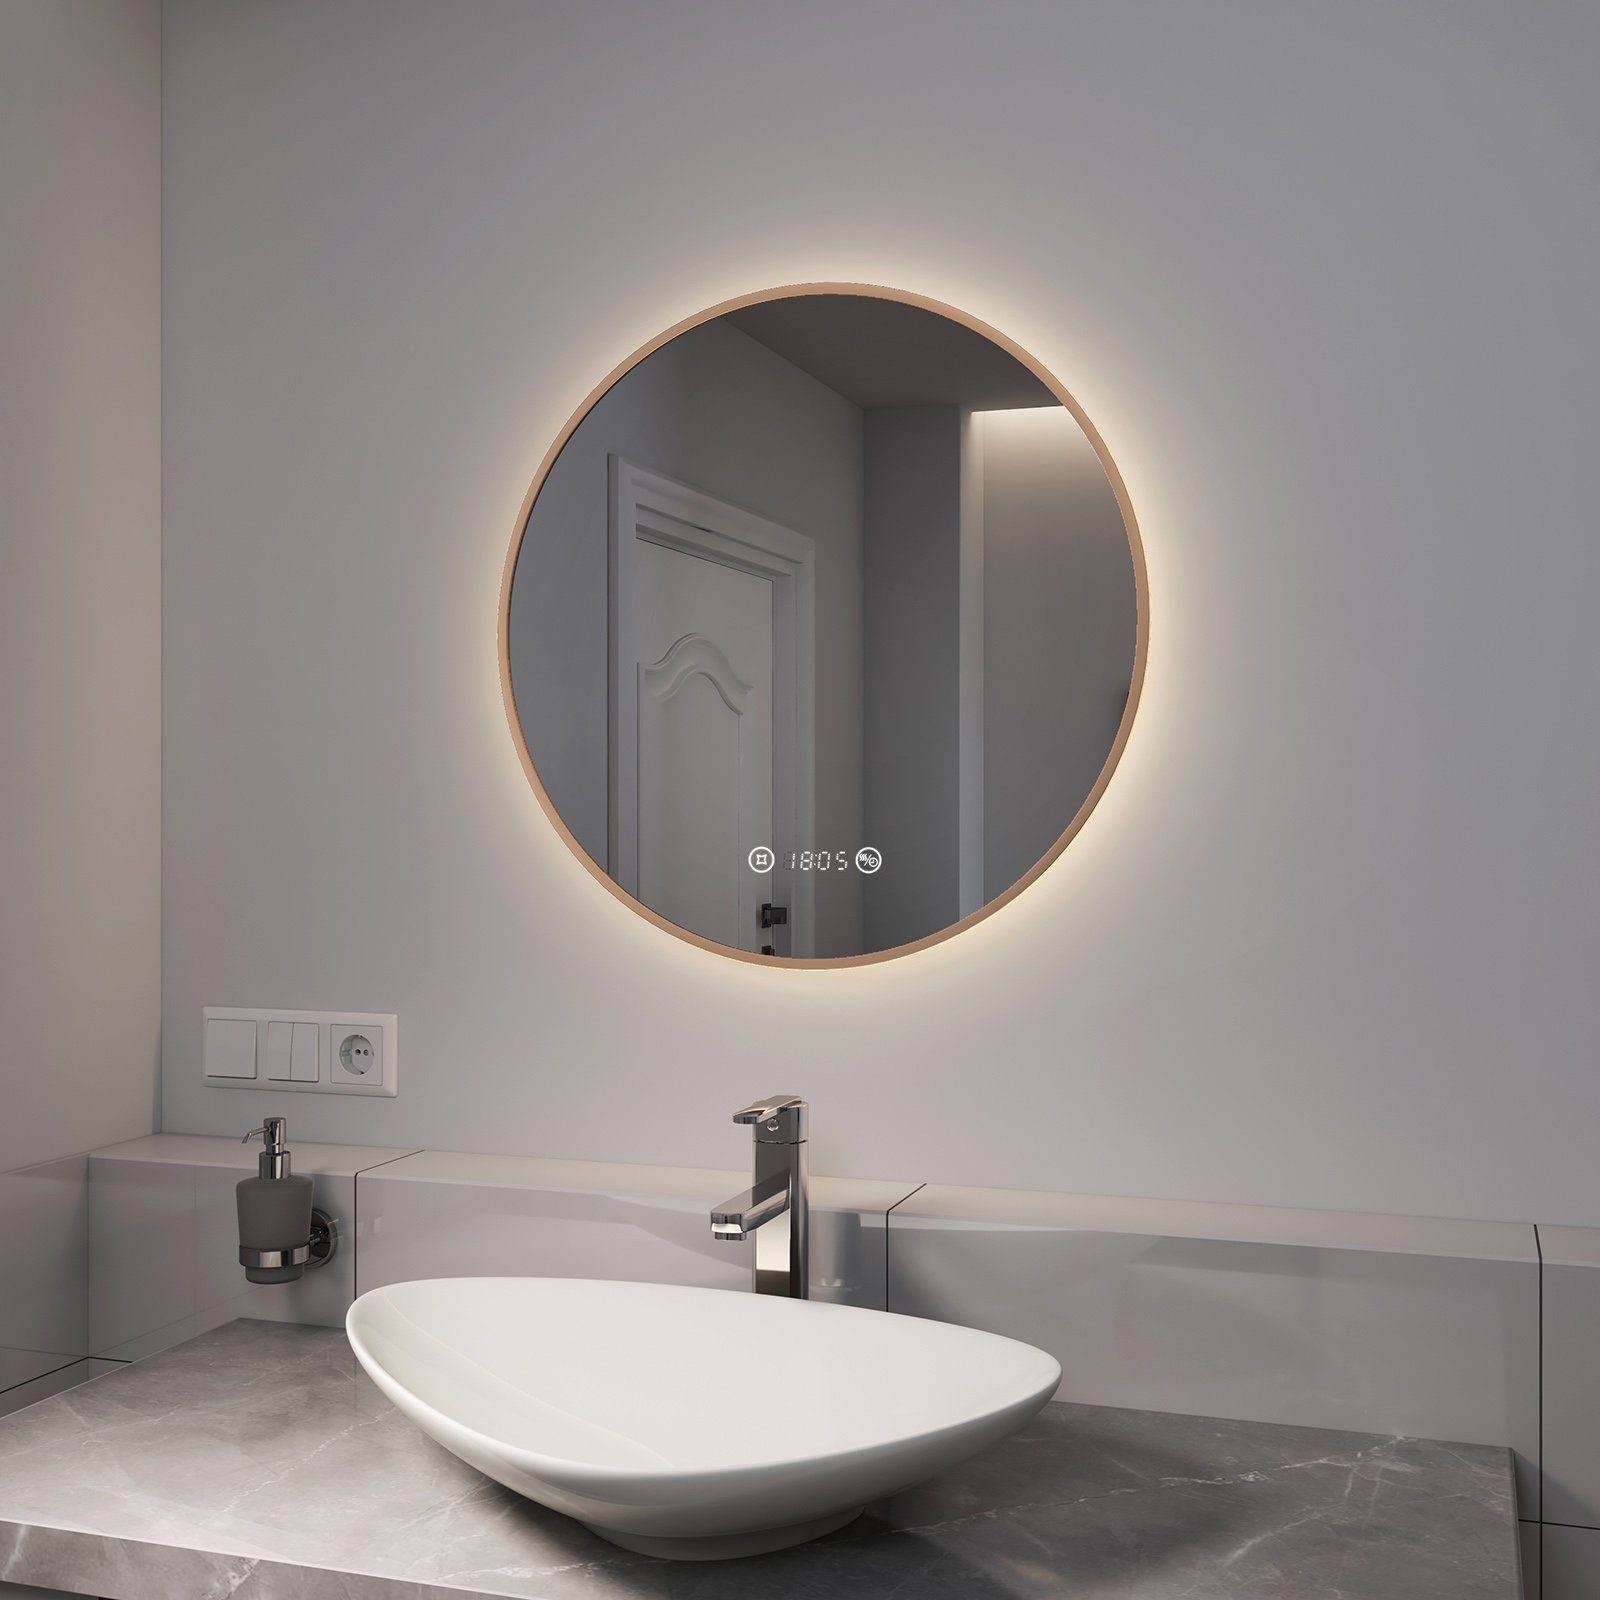 EMKE Badspiegel »EMKE LED Badspiegel Rund Spiegel mit Beleuchtung Gold«,  mit Touch, Antibeschlage, Uhr, Temperatur, Dimmbar, Memory-Funktion